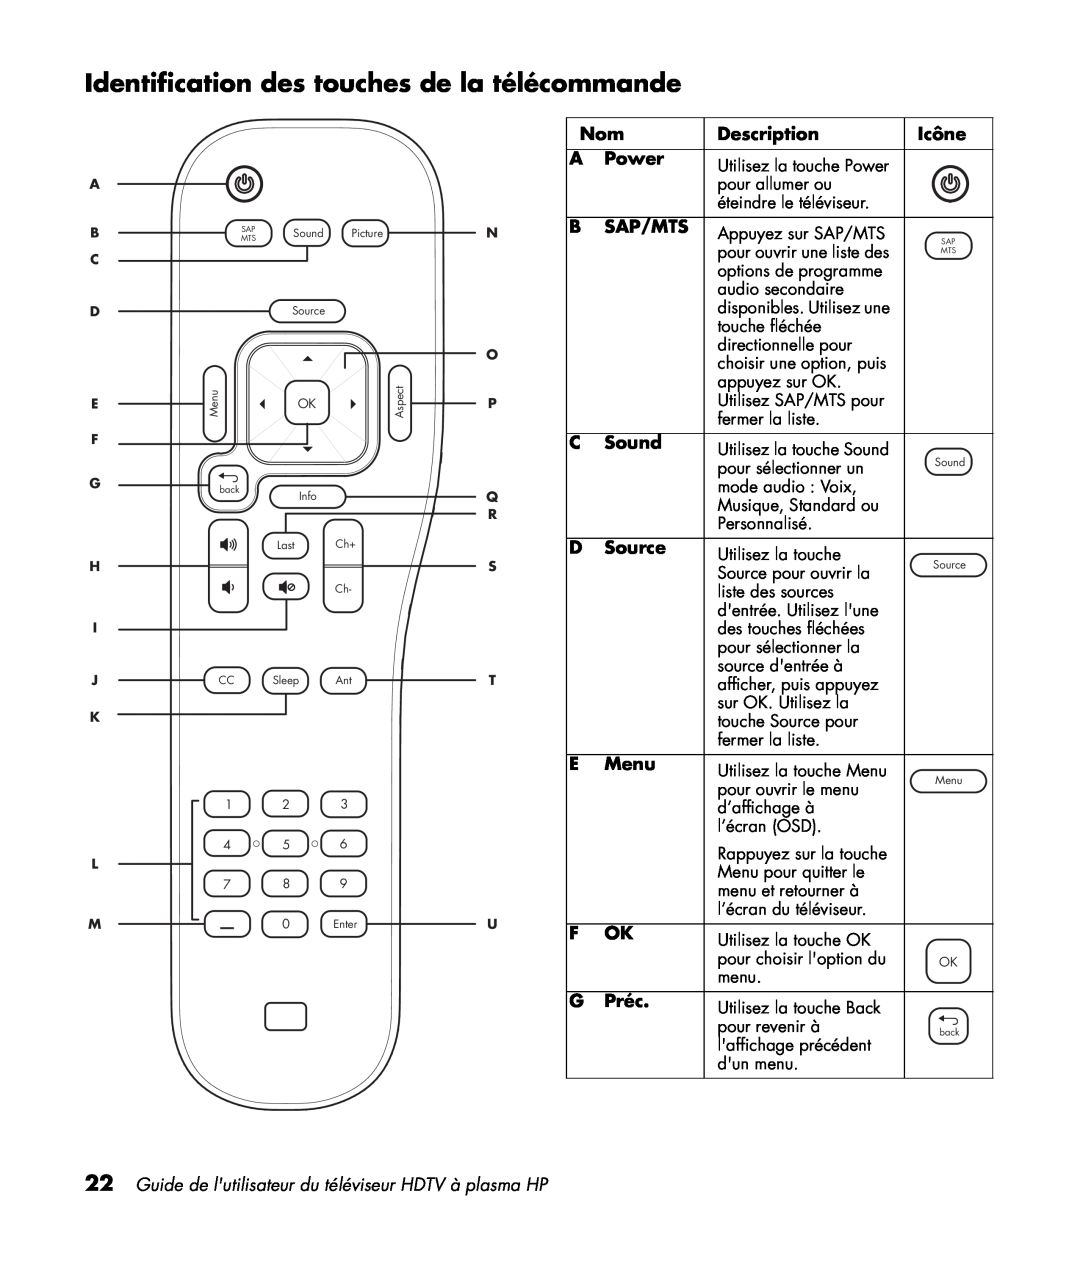 HP PL5060N 50 inch Plasma Identification des touches de la télécommande, Icône, Préc, Description, Power, Sap/Mts, Sound 